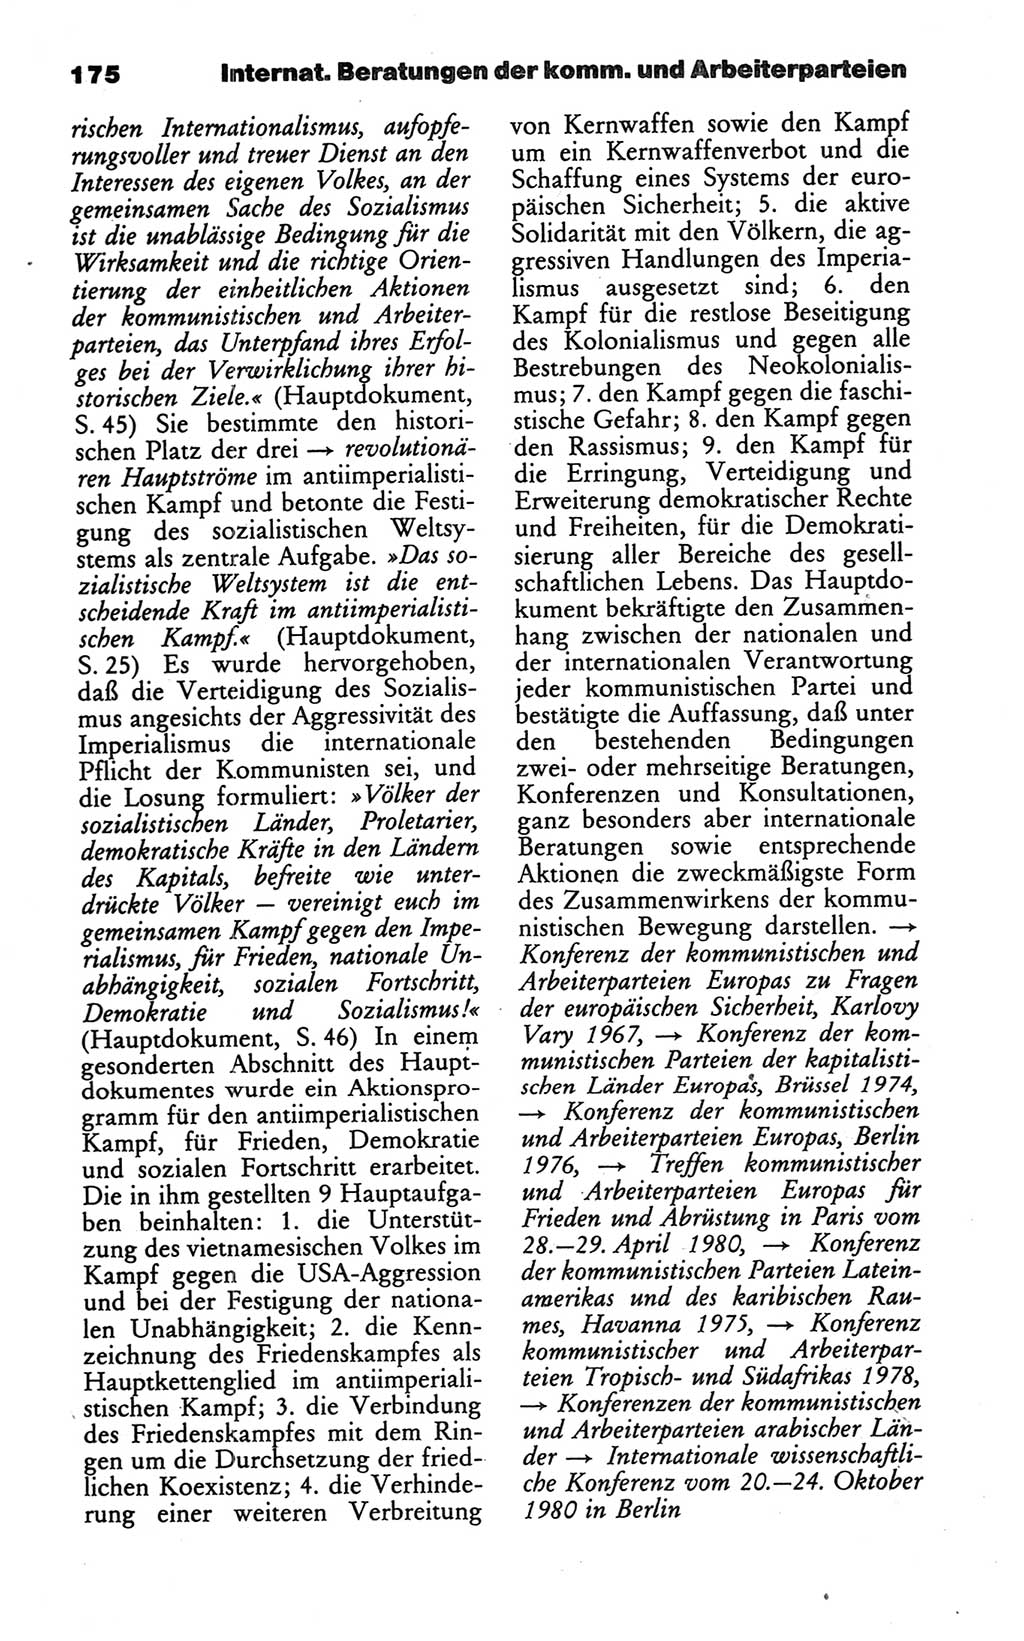 Wörterbuch des wissenschaftlichen Kommunismus [Deutsche Demokratische Republik (DDR)] 1986, Seite 175 (Wb. wiss. Komm. DDR 1986, S. 175)